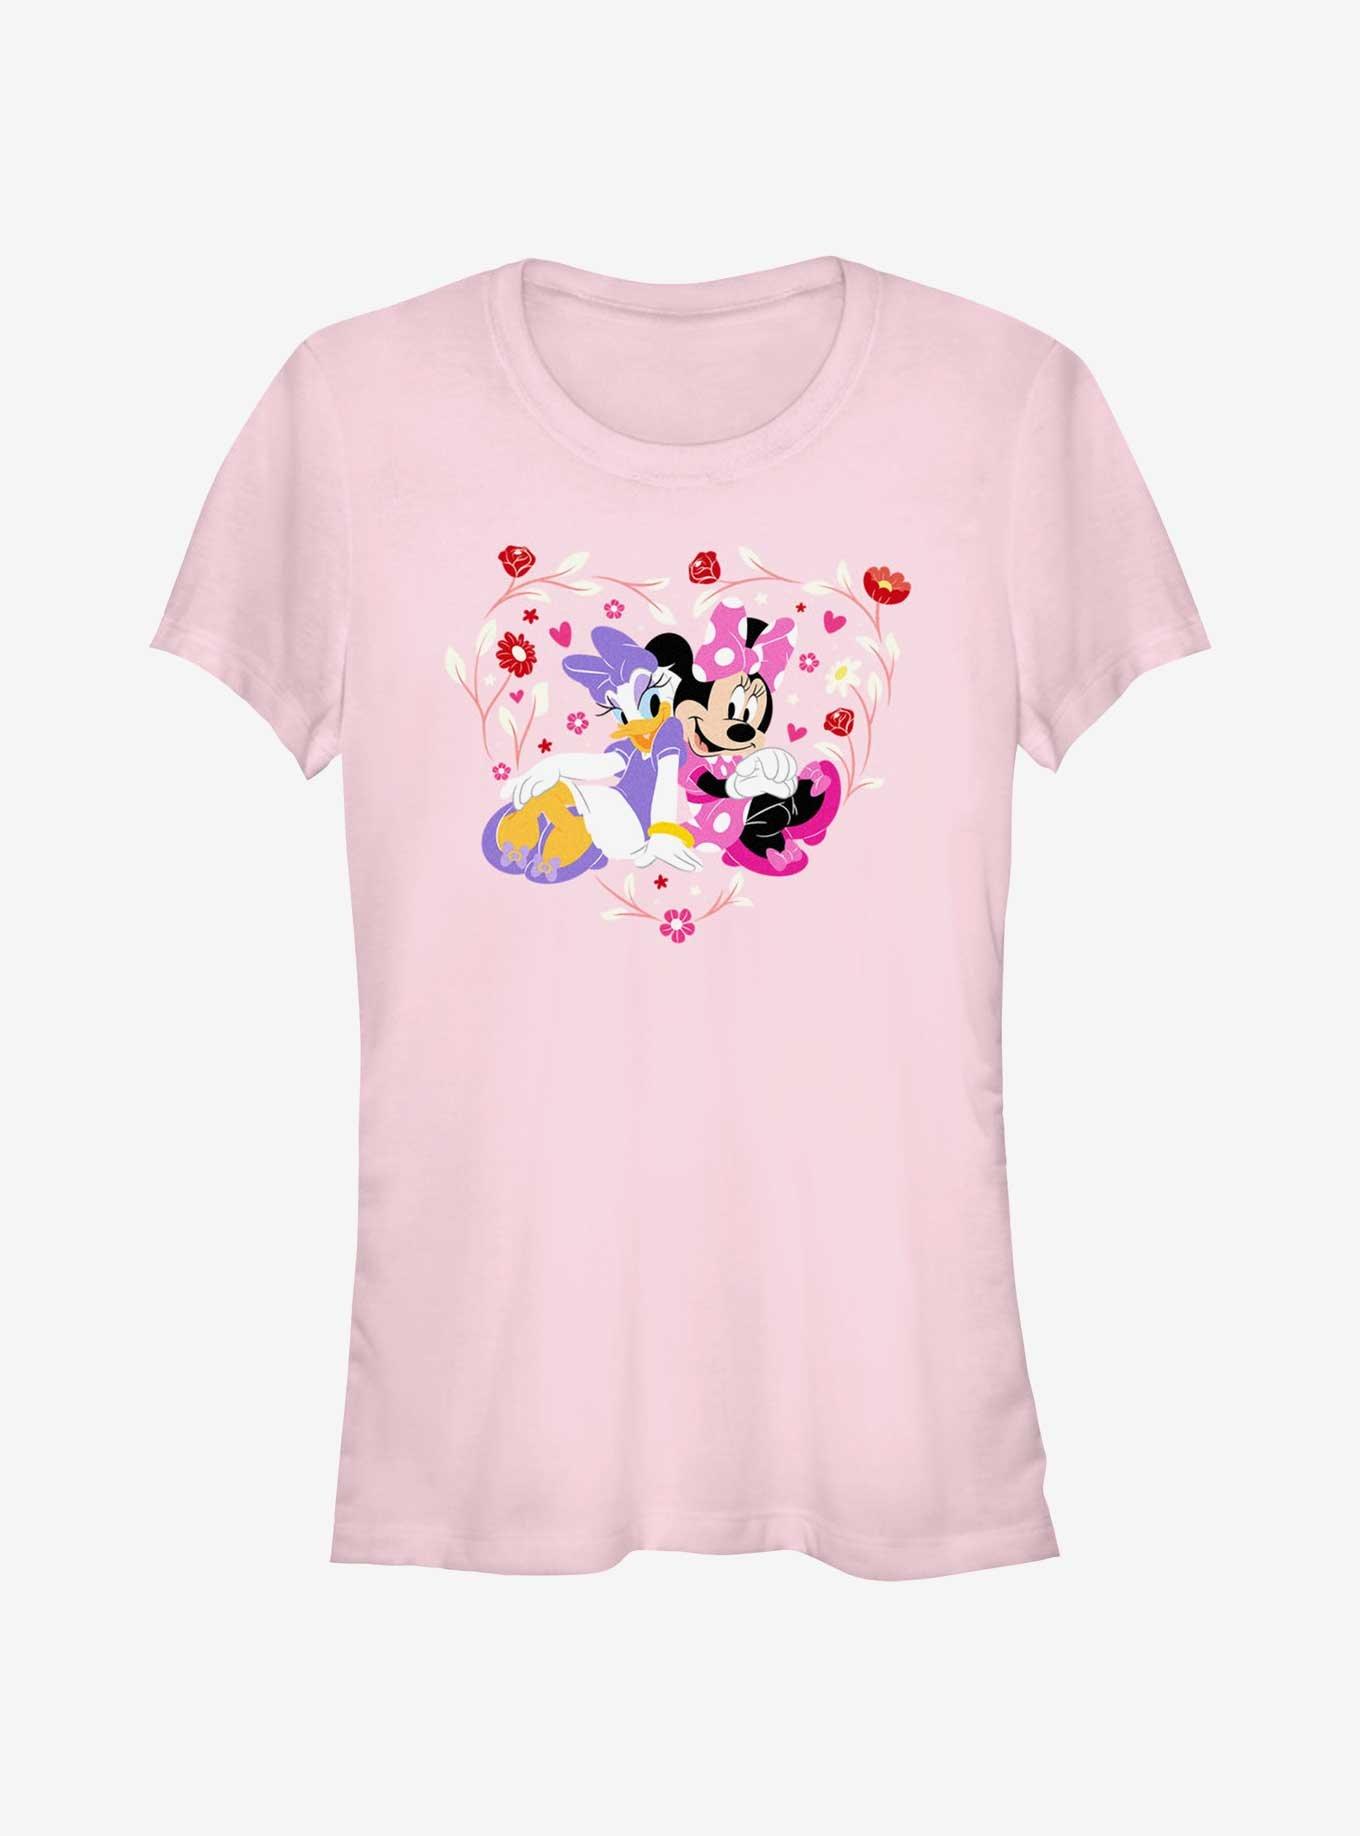 Disney Minnie Mouse & Daisy Duck Flowers Heart Girls T-Shirt, LIGHT PINK, hi-res